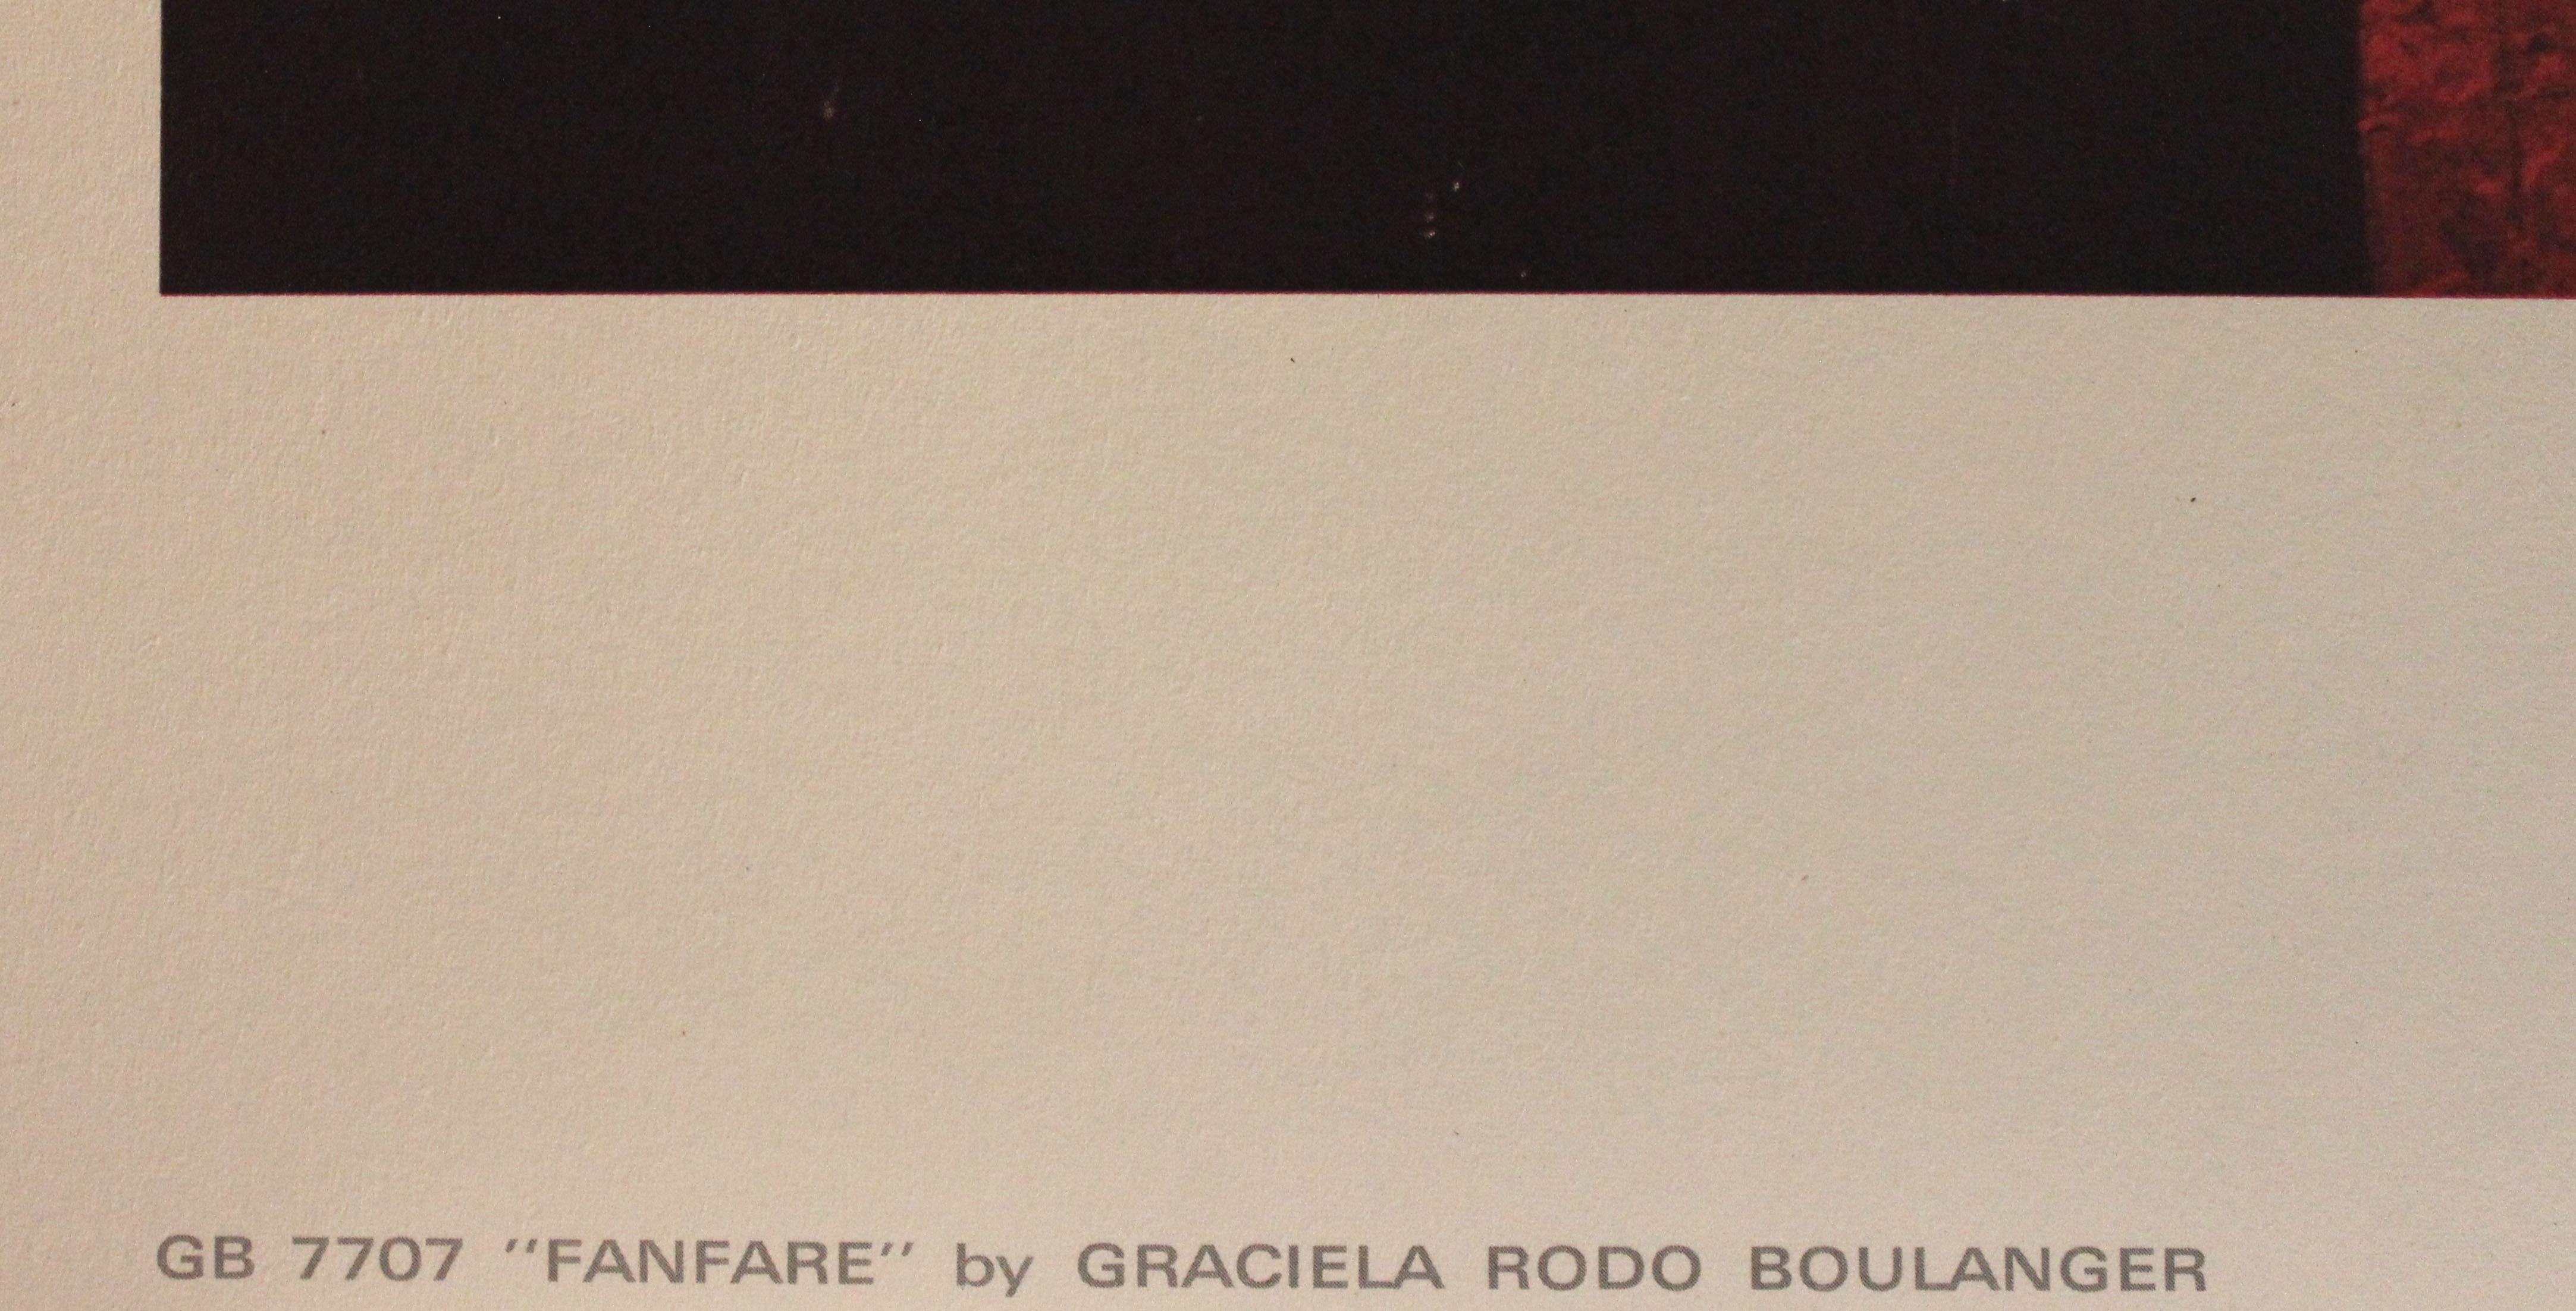 Fanfare. Touchstone Publishers. Imprime En France - Print by Graciela Rodo Boulanger